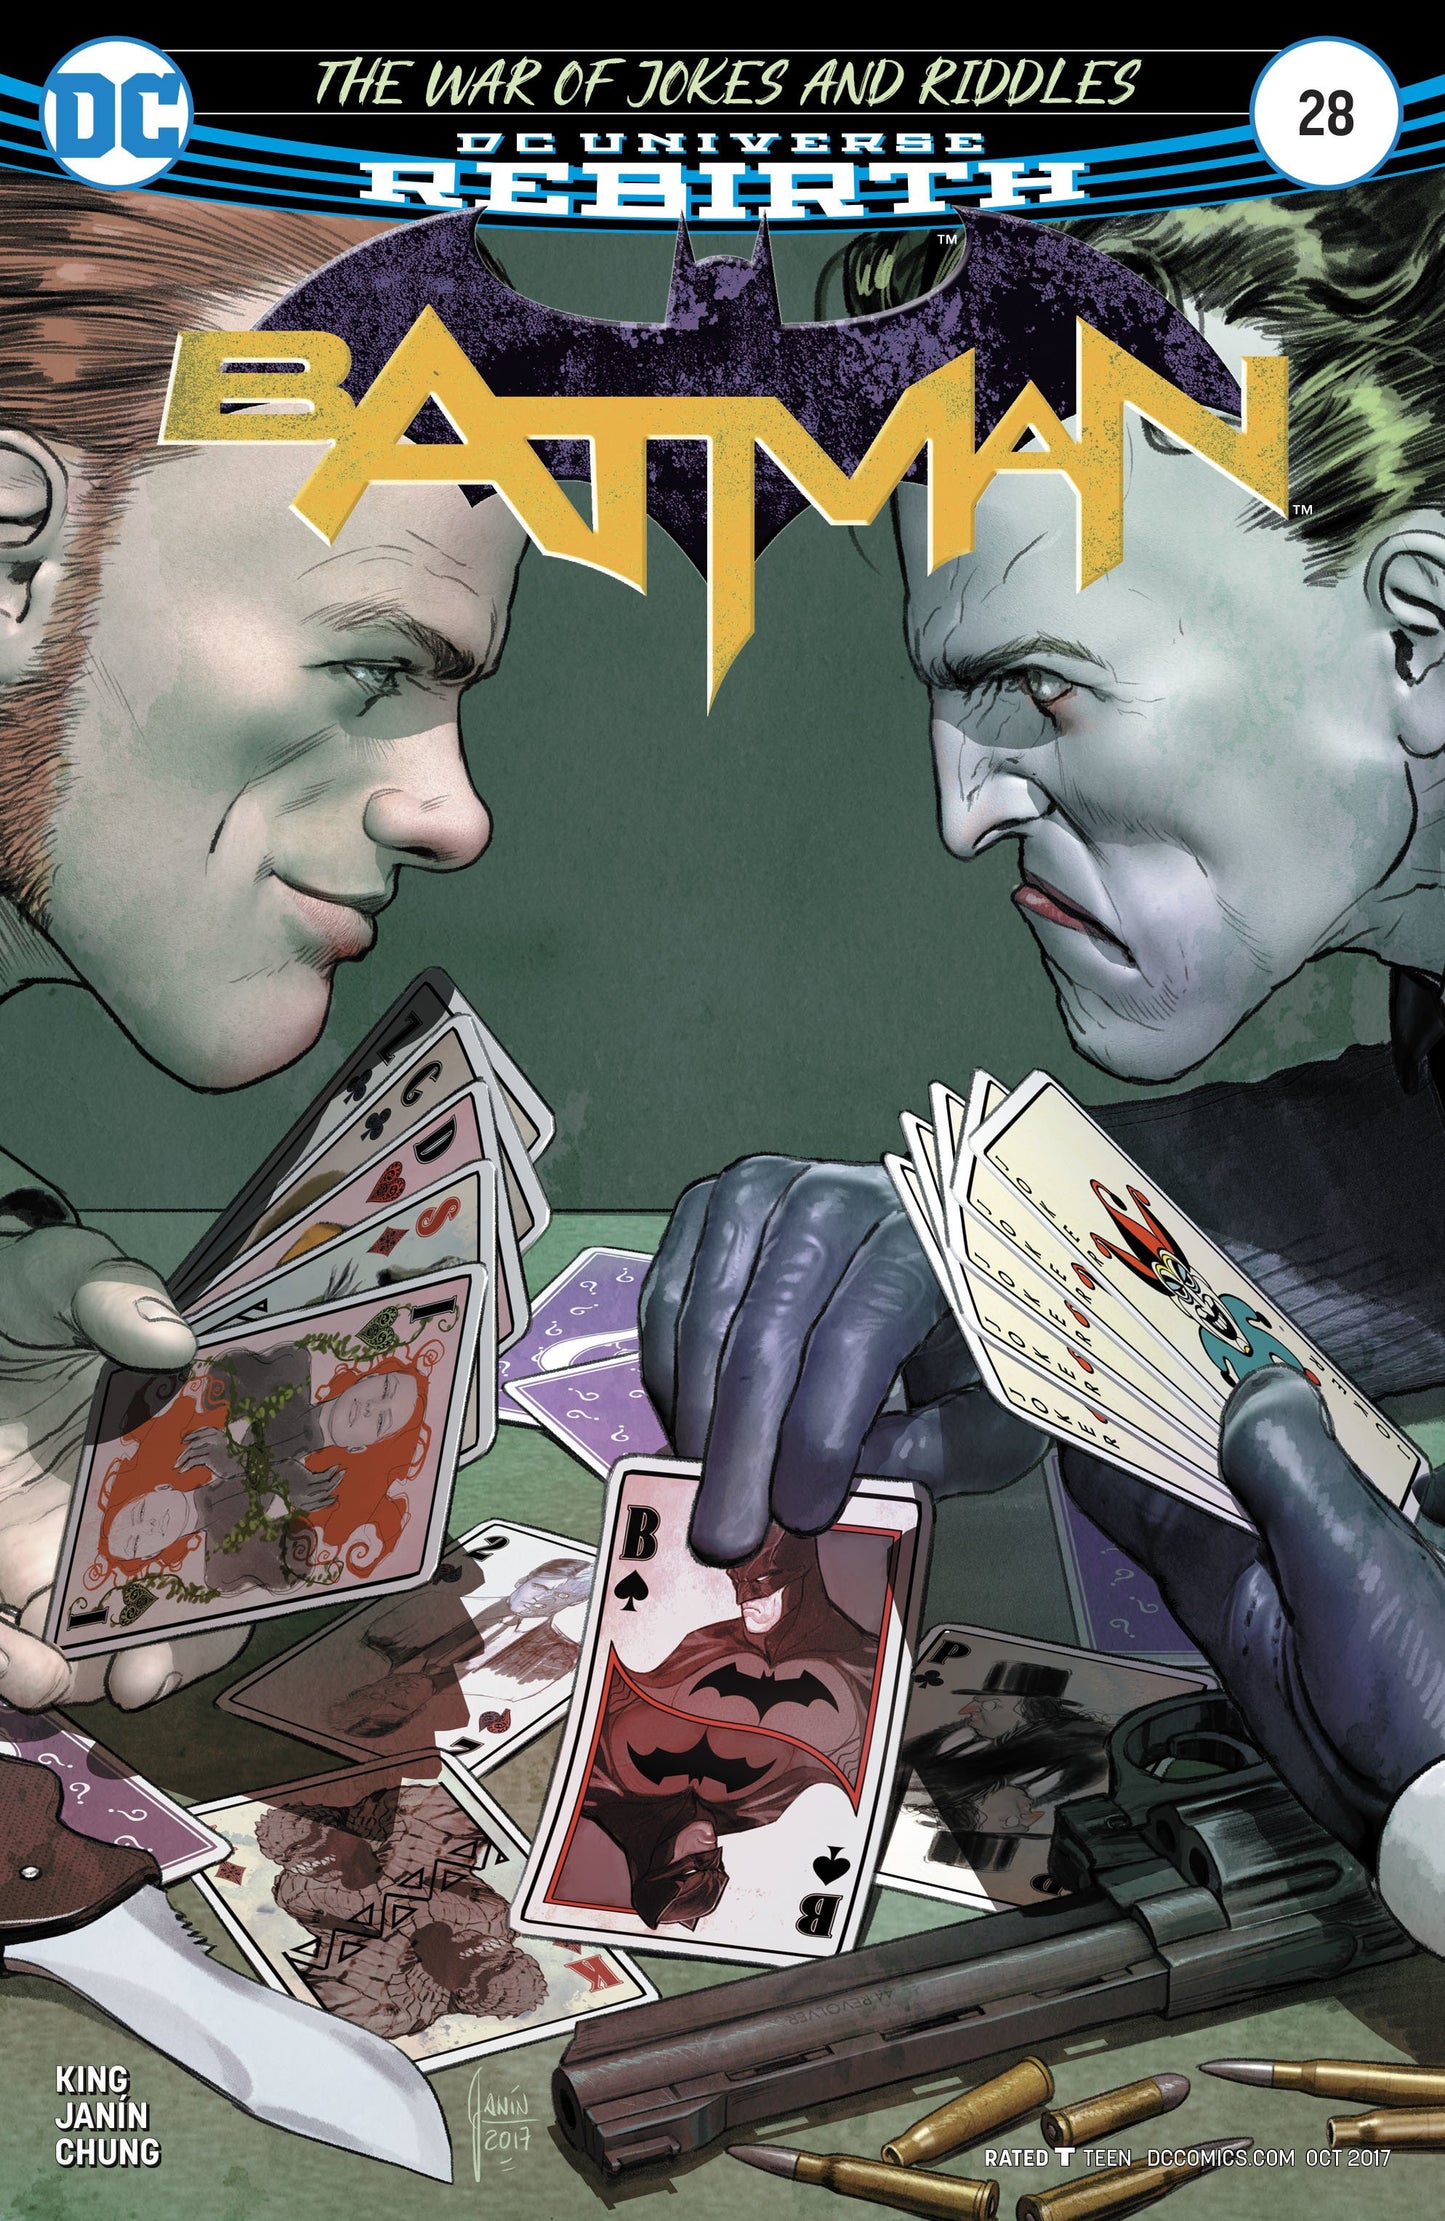 BATMAN #28 COVER